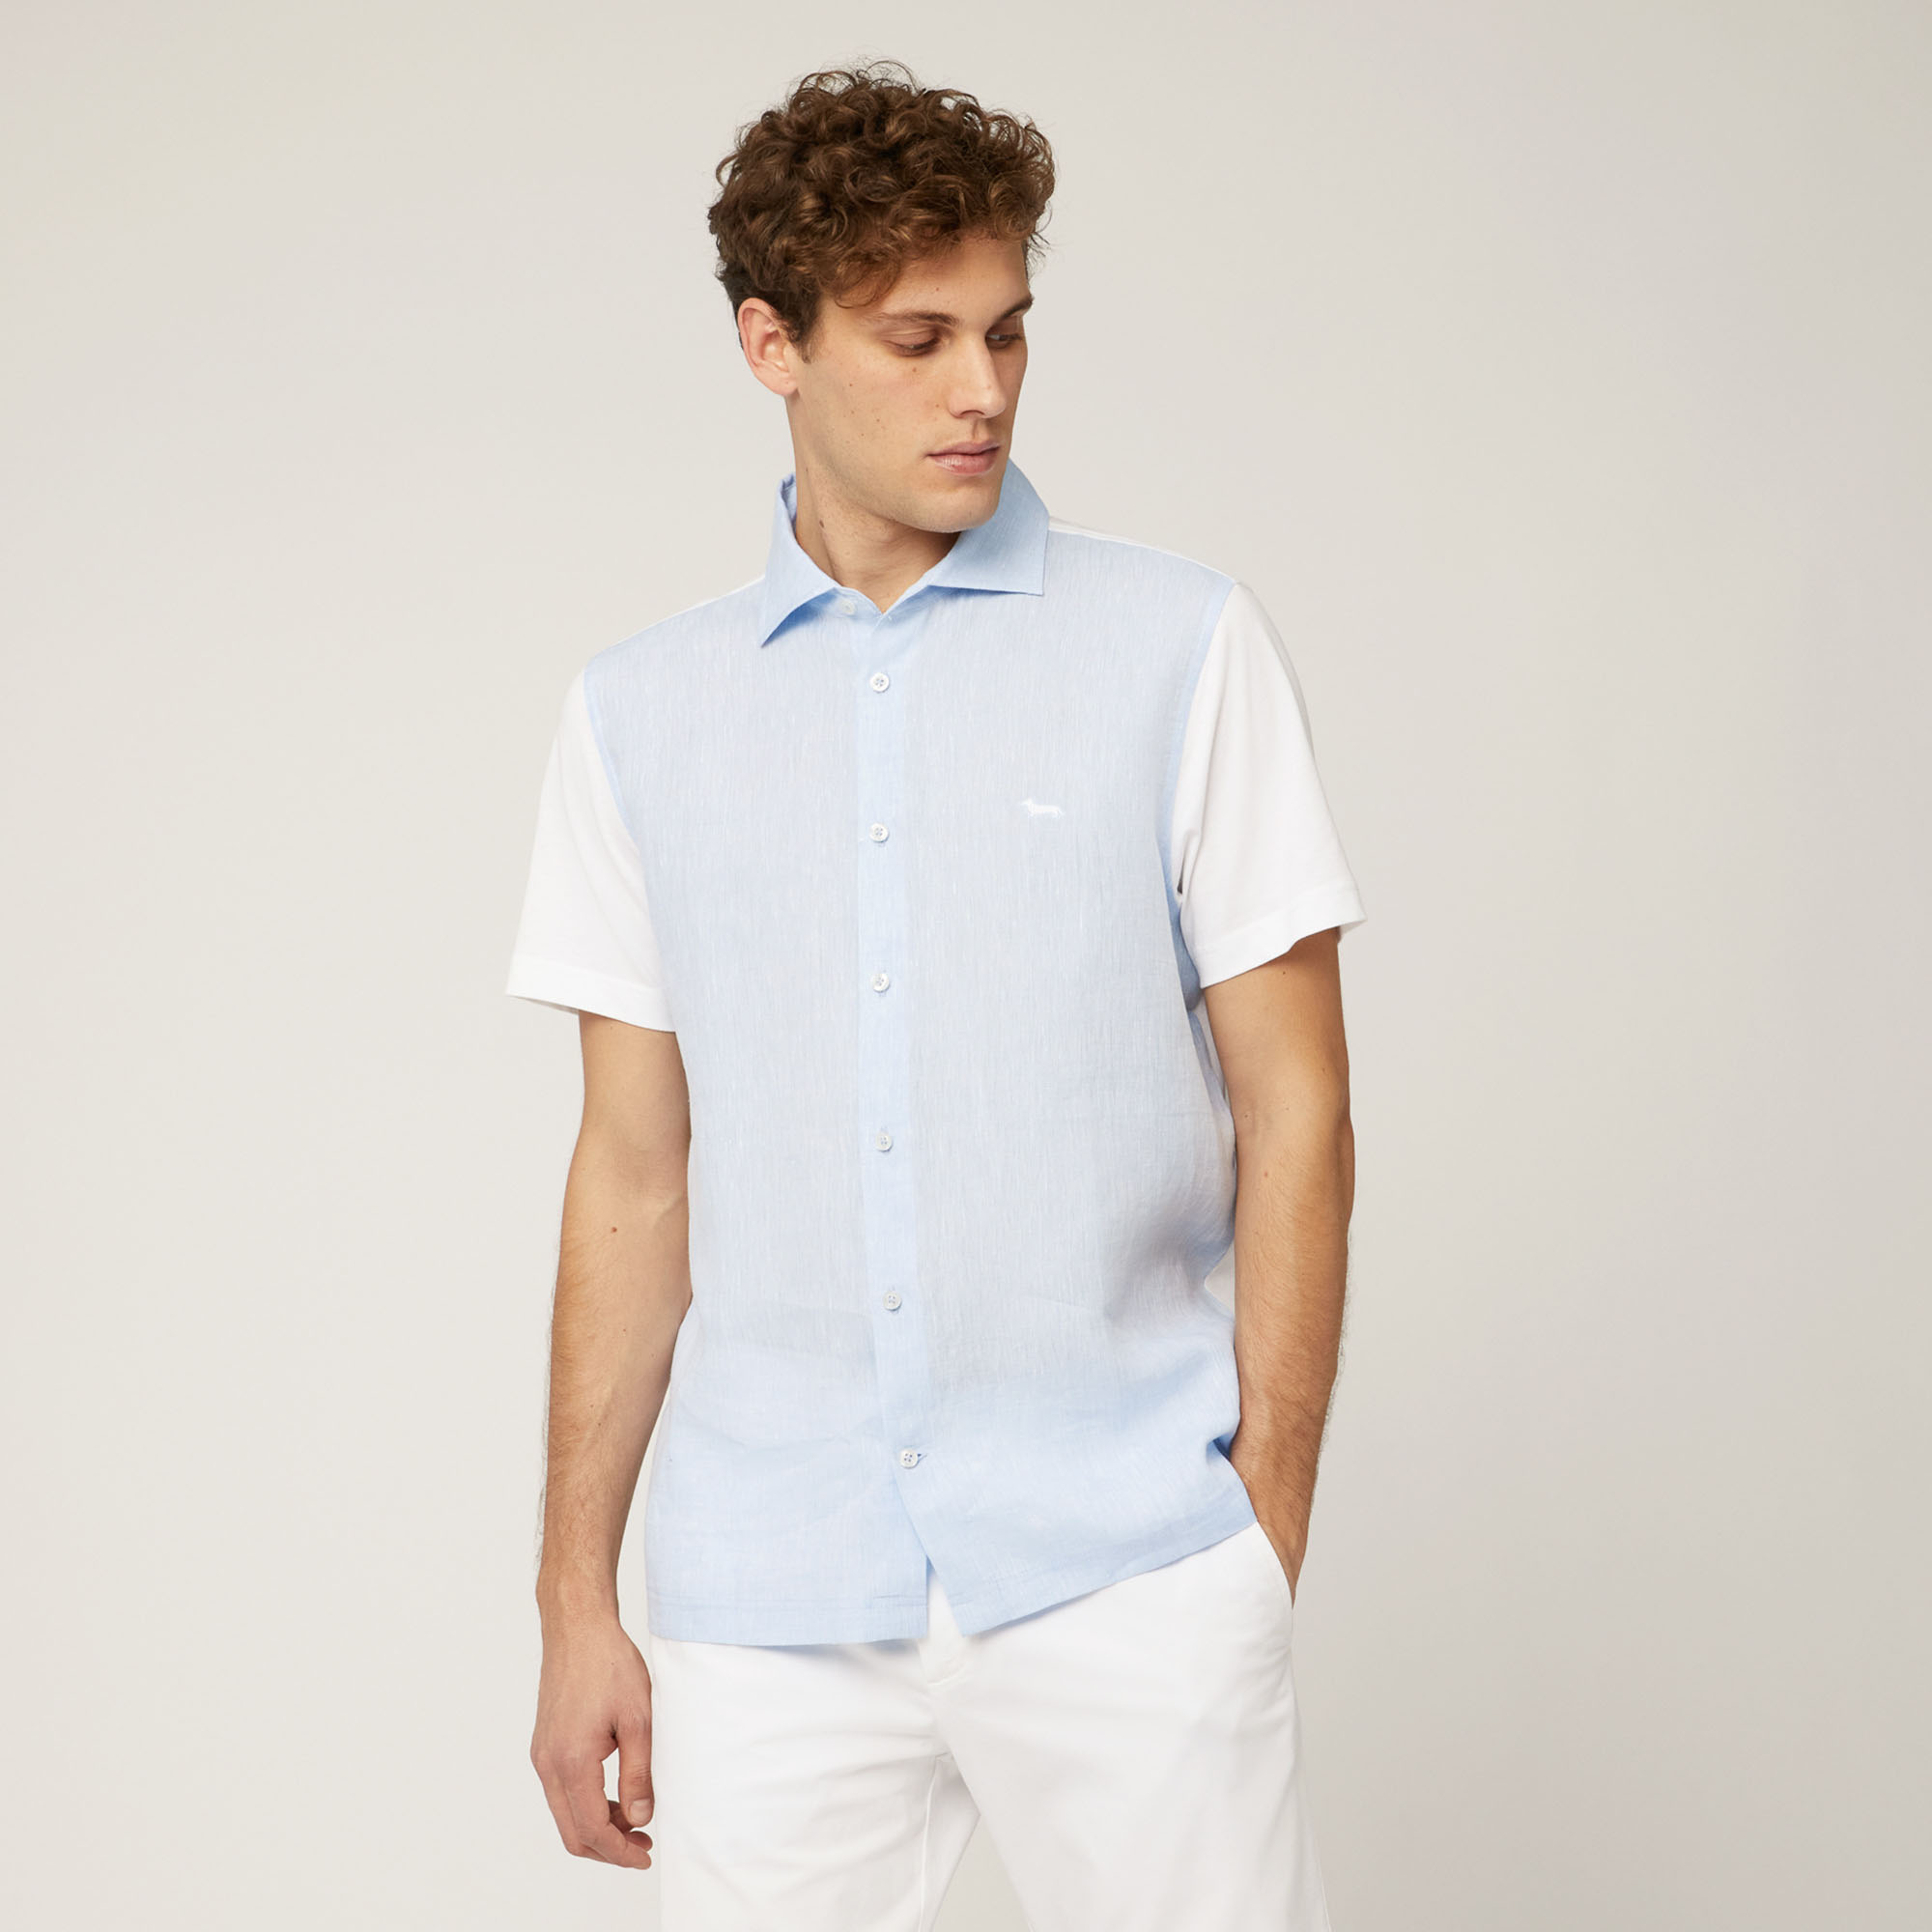 Polo Camicia In Cotone E Lino, Bianco, large